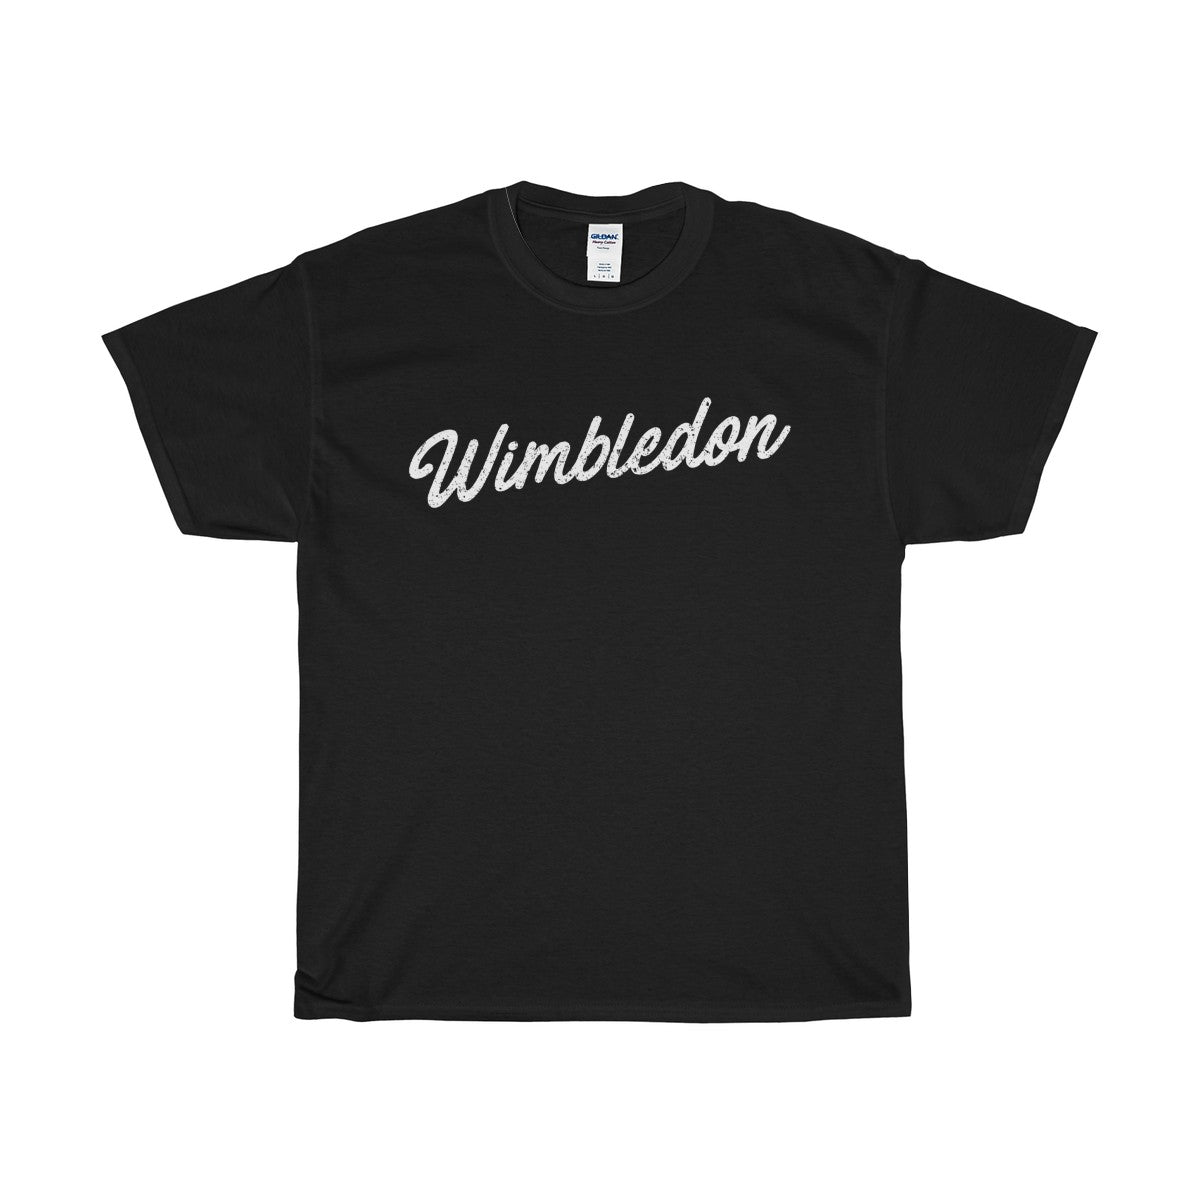 Wimbledon Scripted T-Shirt